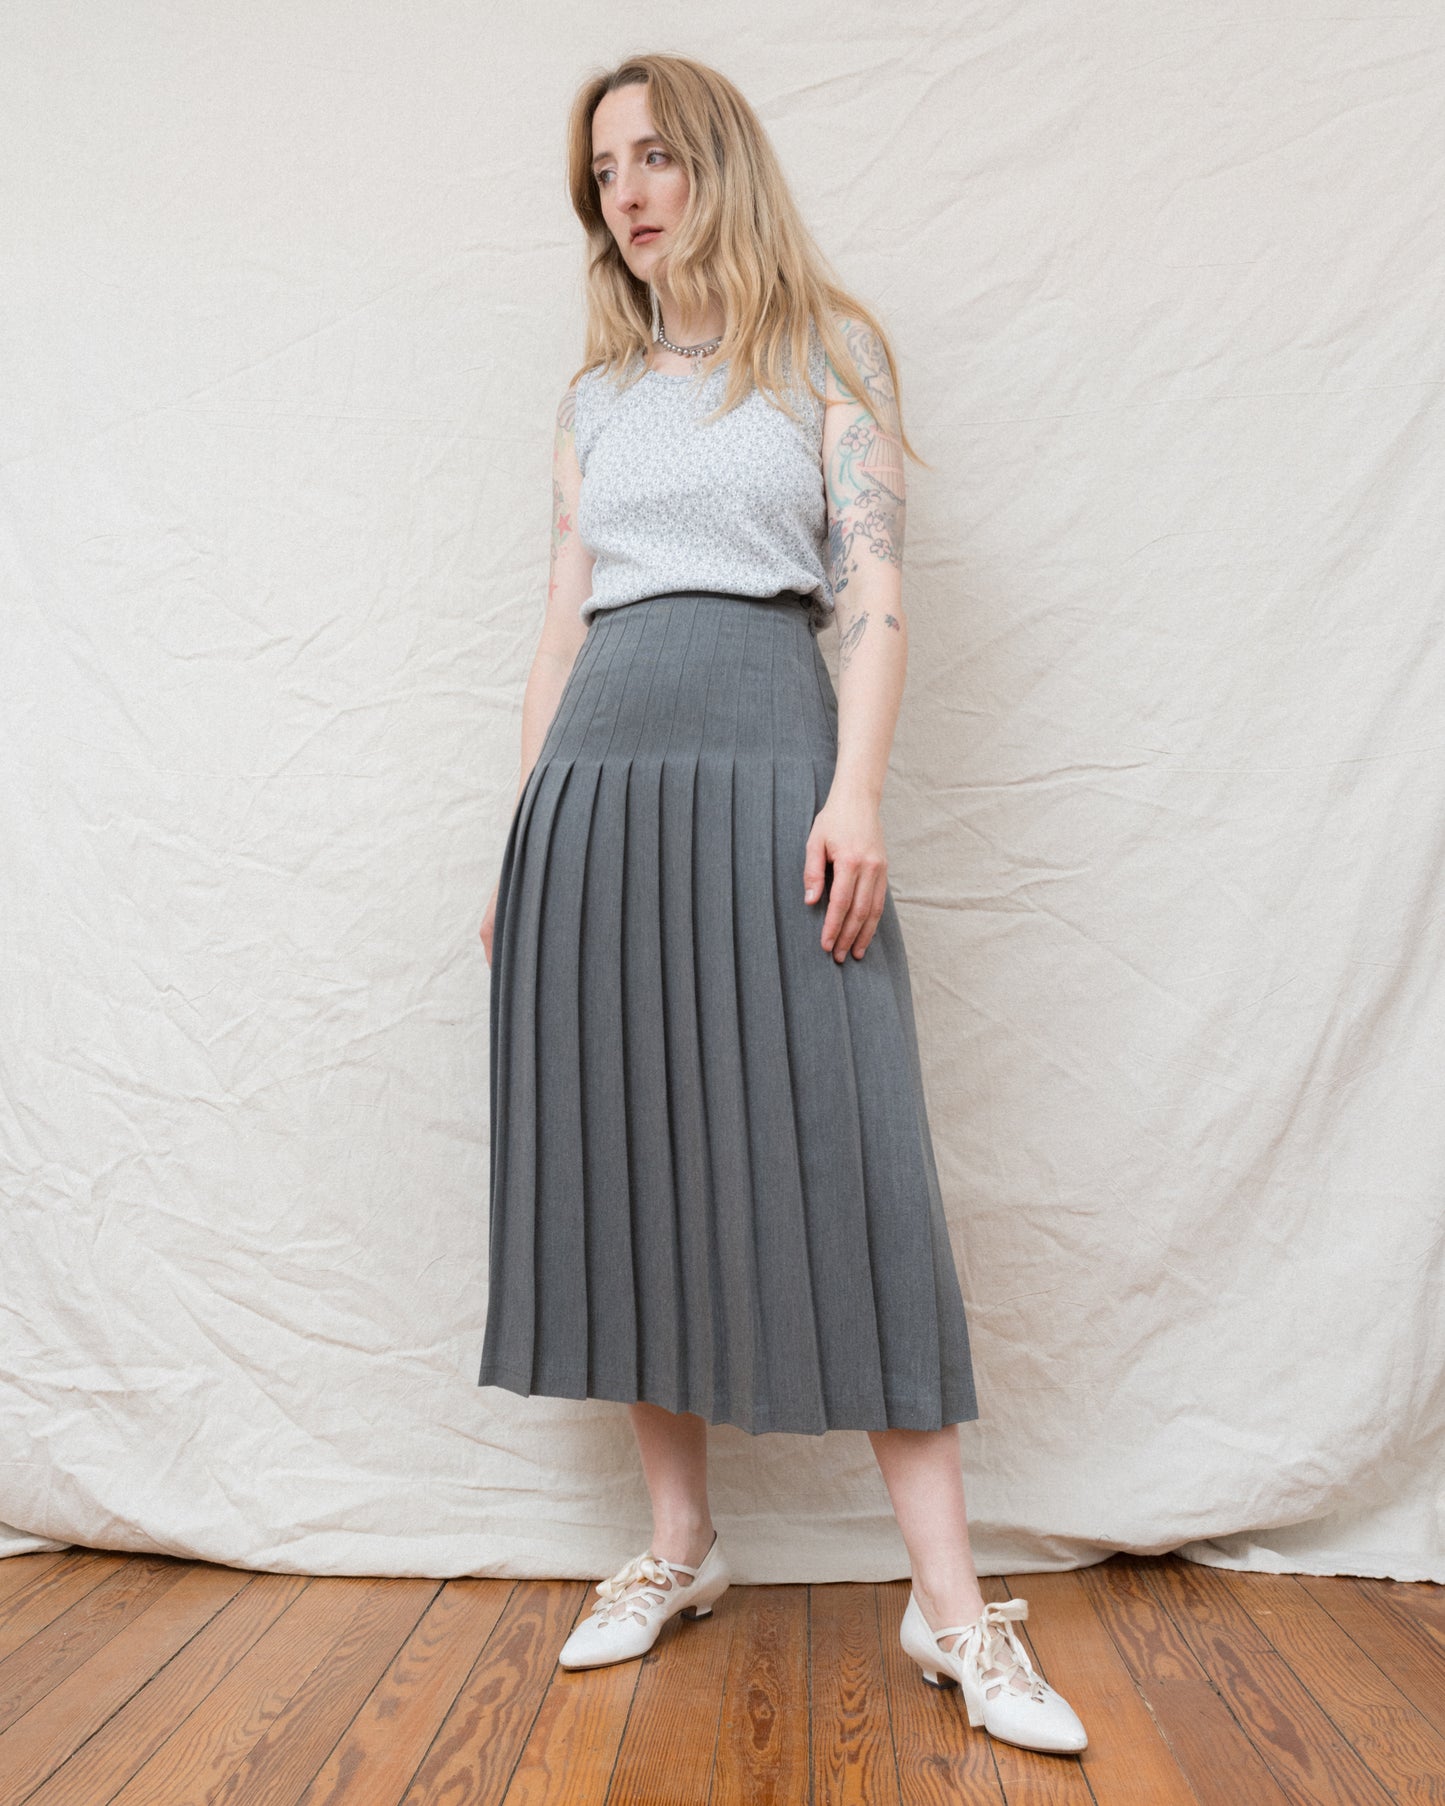 Vintage Grey Pleated Skirt (S/M)